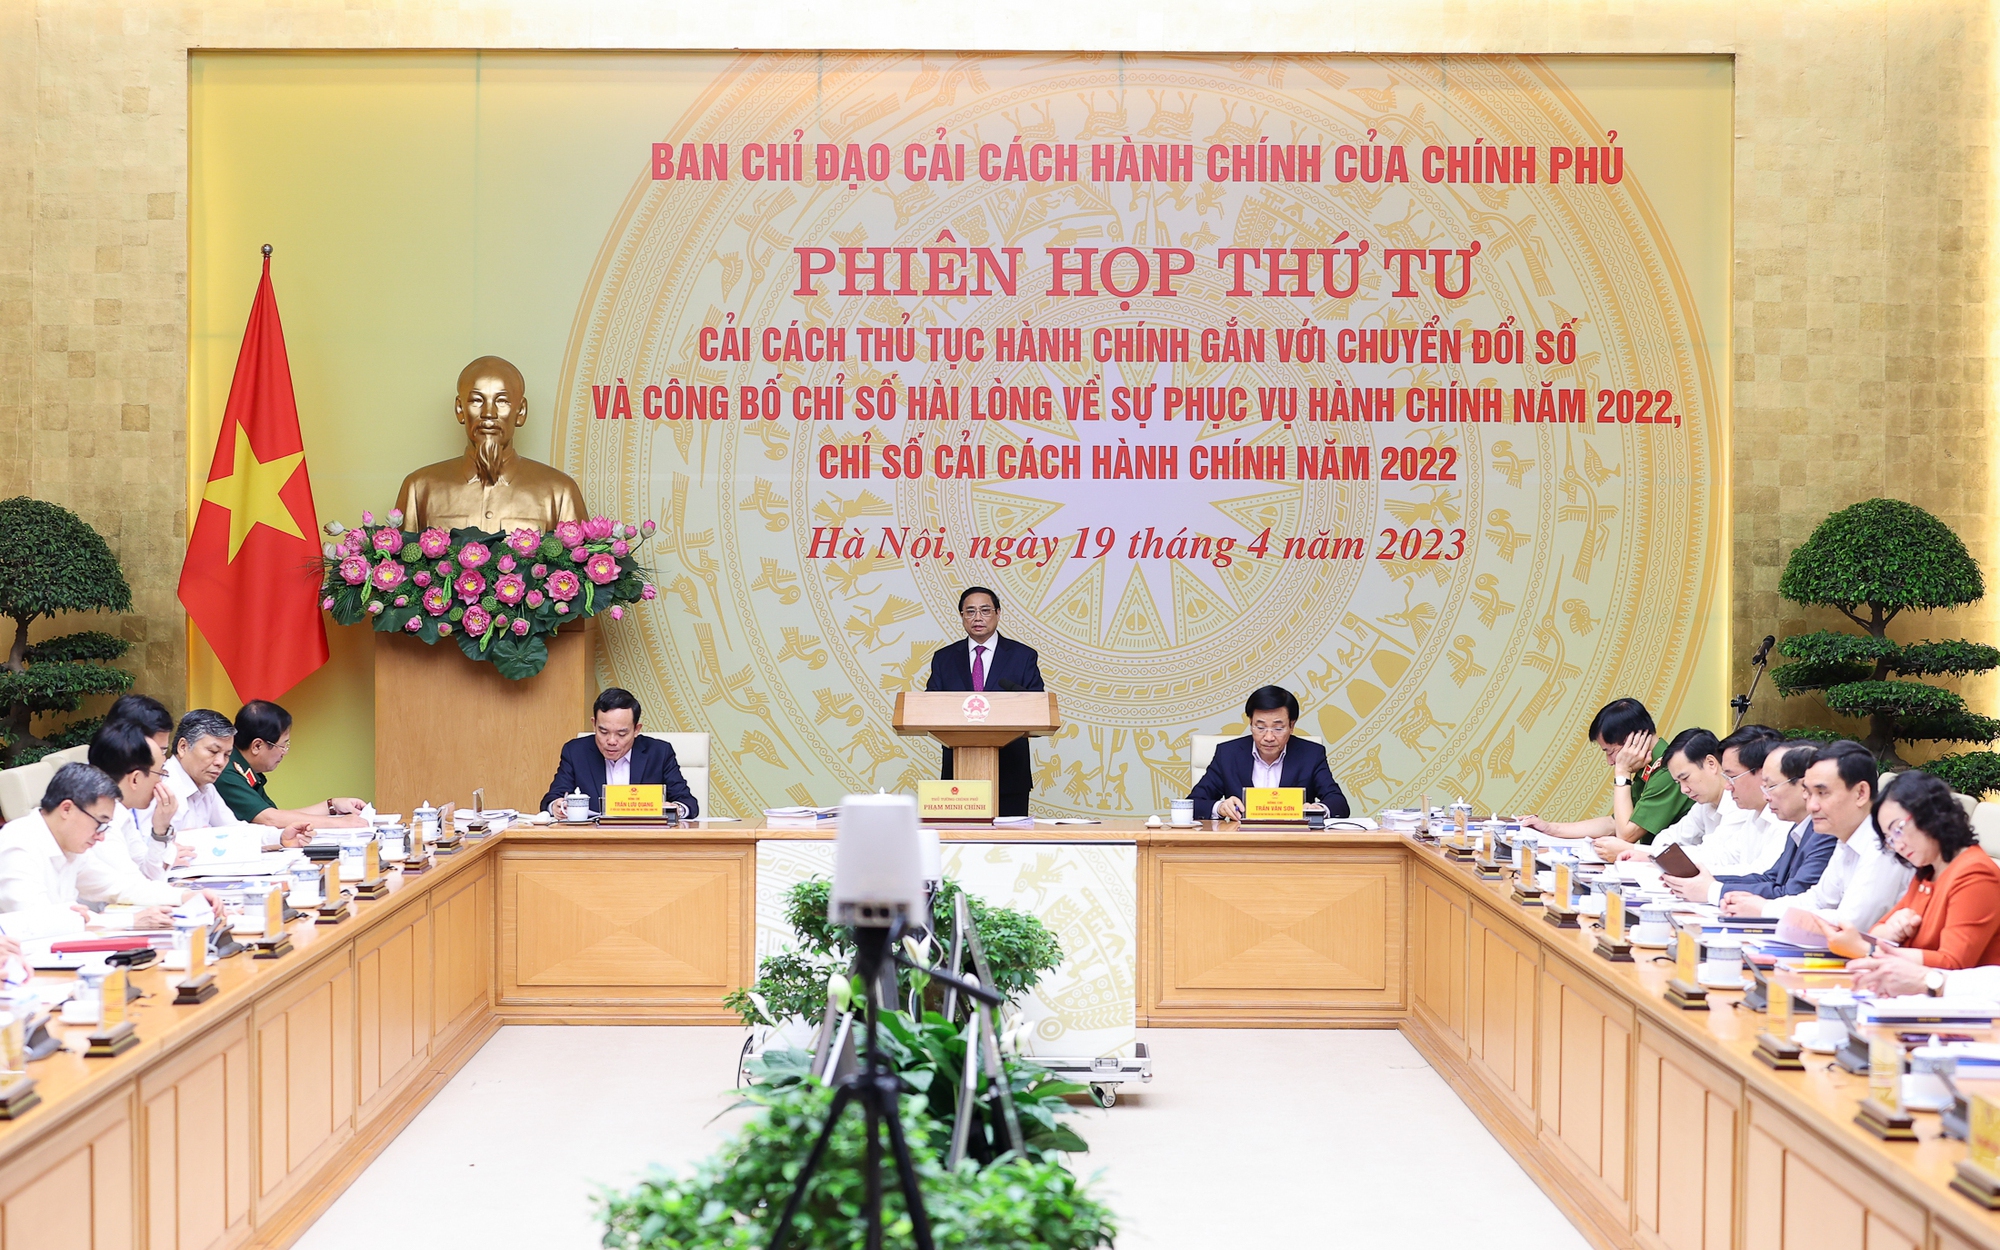 Thủ tướng Phạm Minh Chính chủ trì Phiên họp thứ tư BCĐ cải cách hành chính của Chính phủ